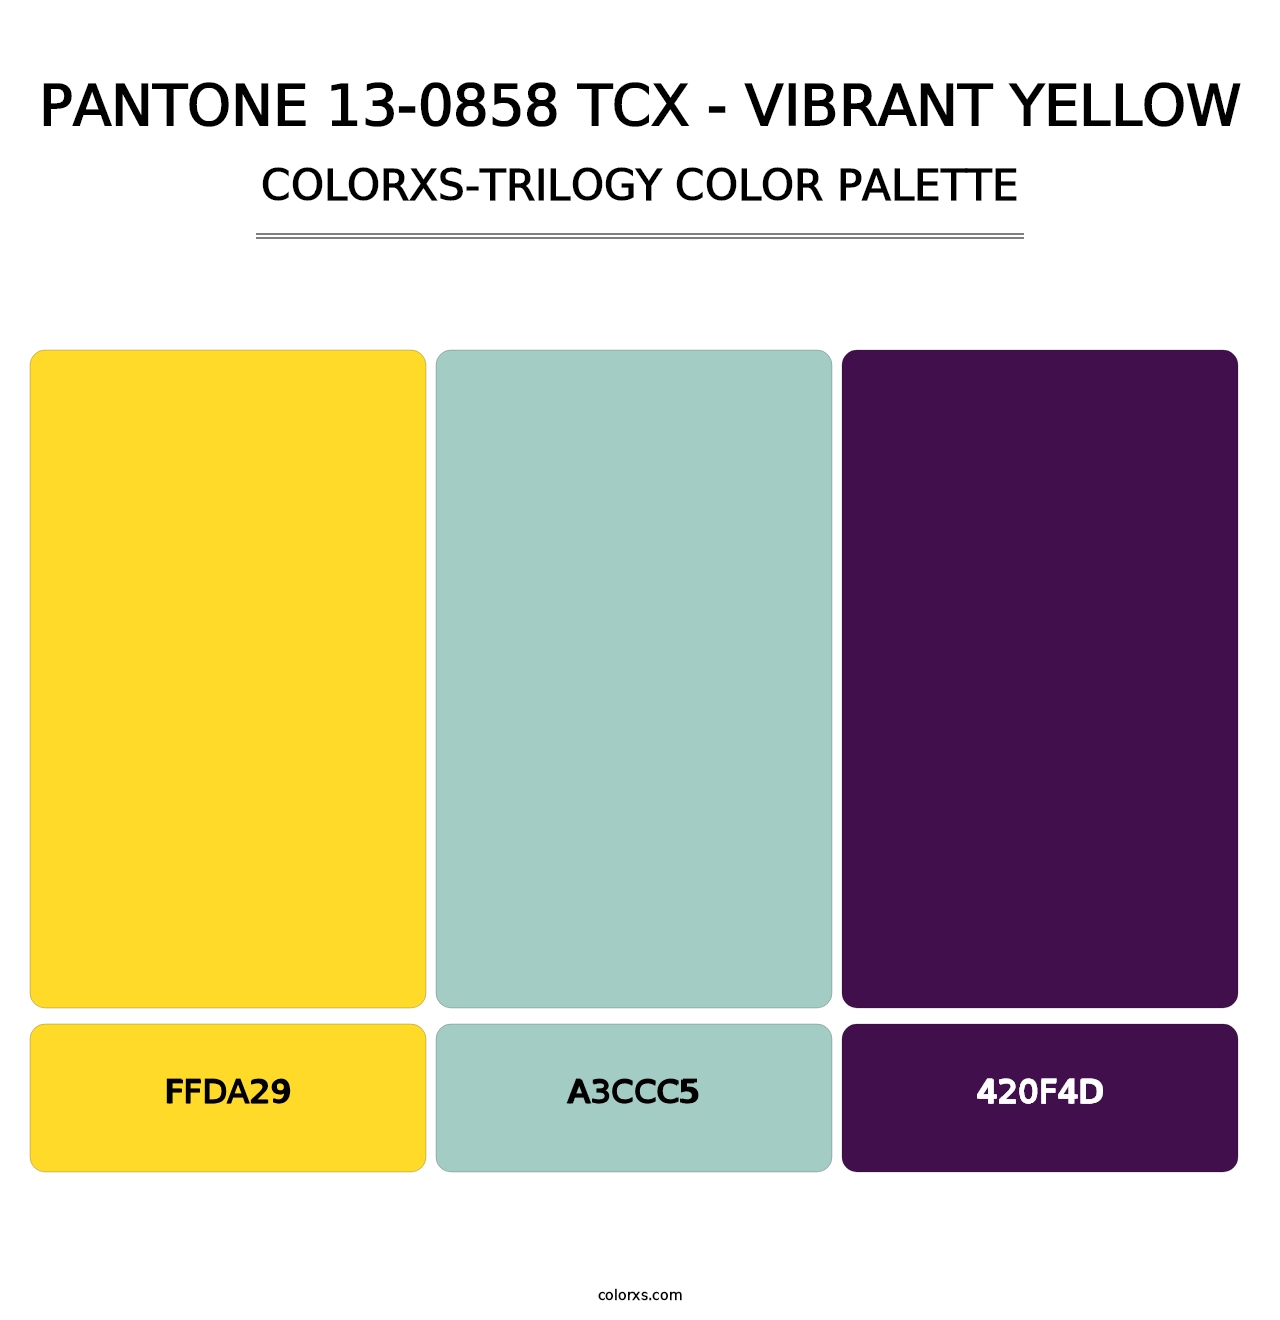 PANTONE 13-0858 TCX - Vibrant Yellow - Colorxs Trilogy Palette